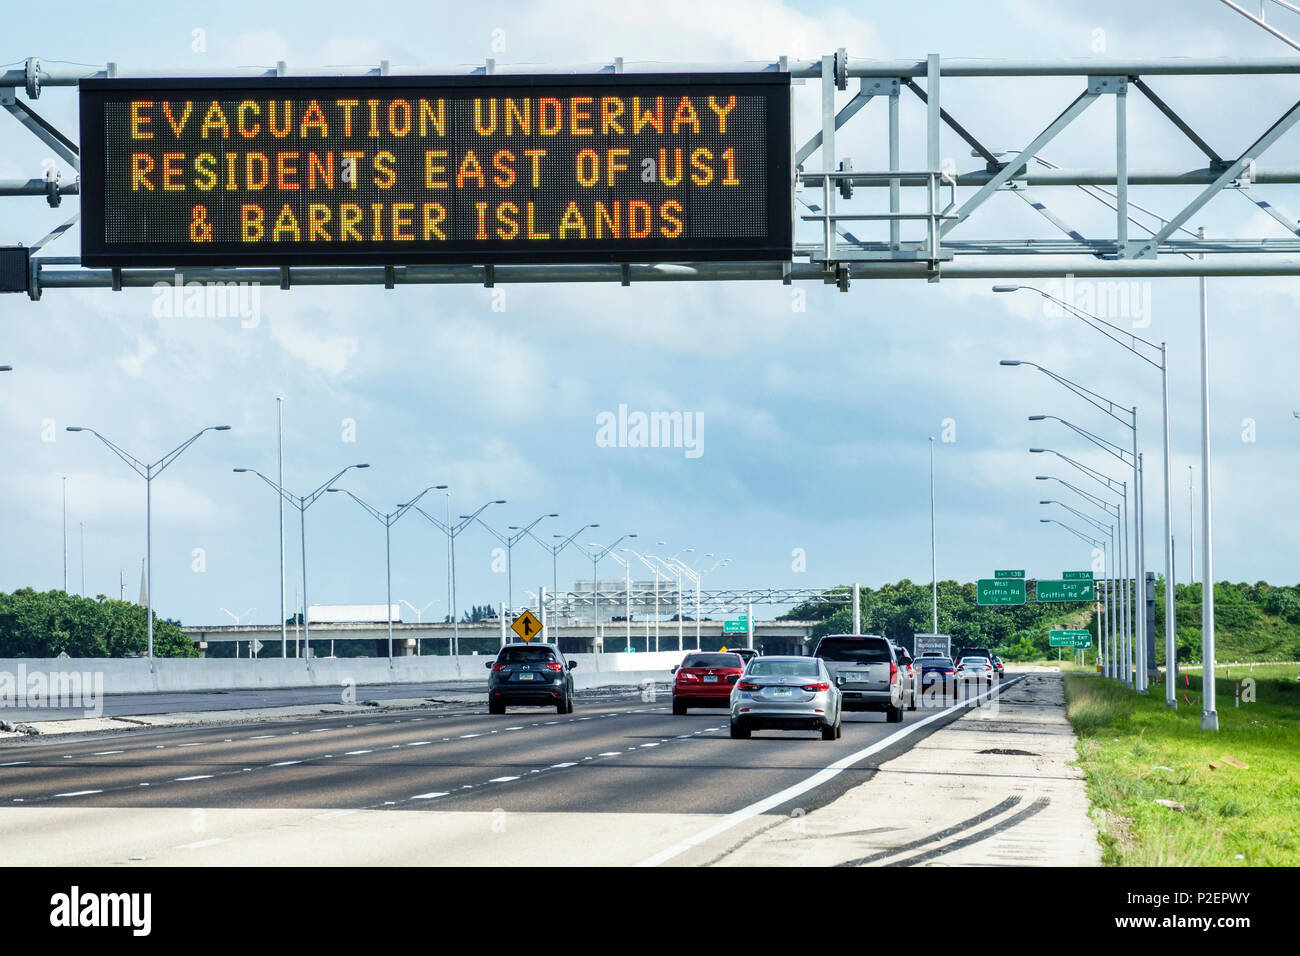 Miami Florida, preparazione all'uragano Irma, Interstate i-75 I75, cartello elettronico, evacuazione in corso isole barriera est della US1, traff autostrada Foto Stock